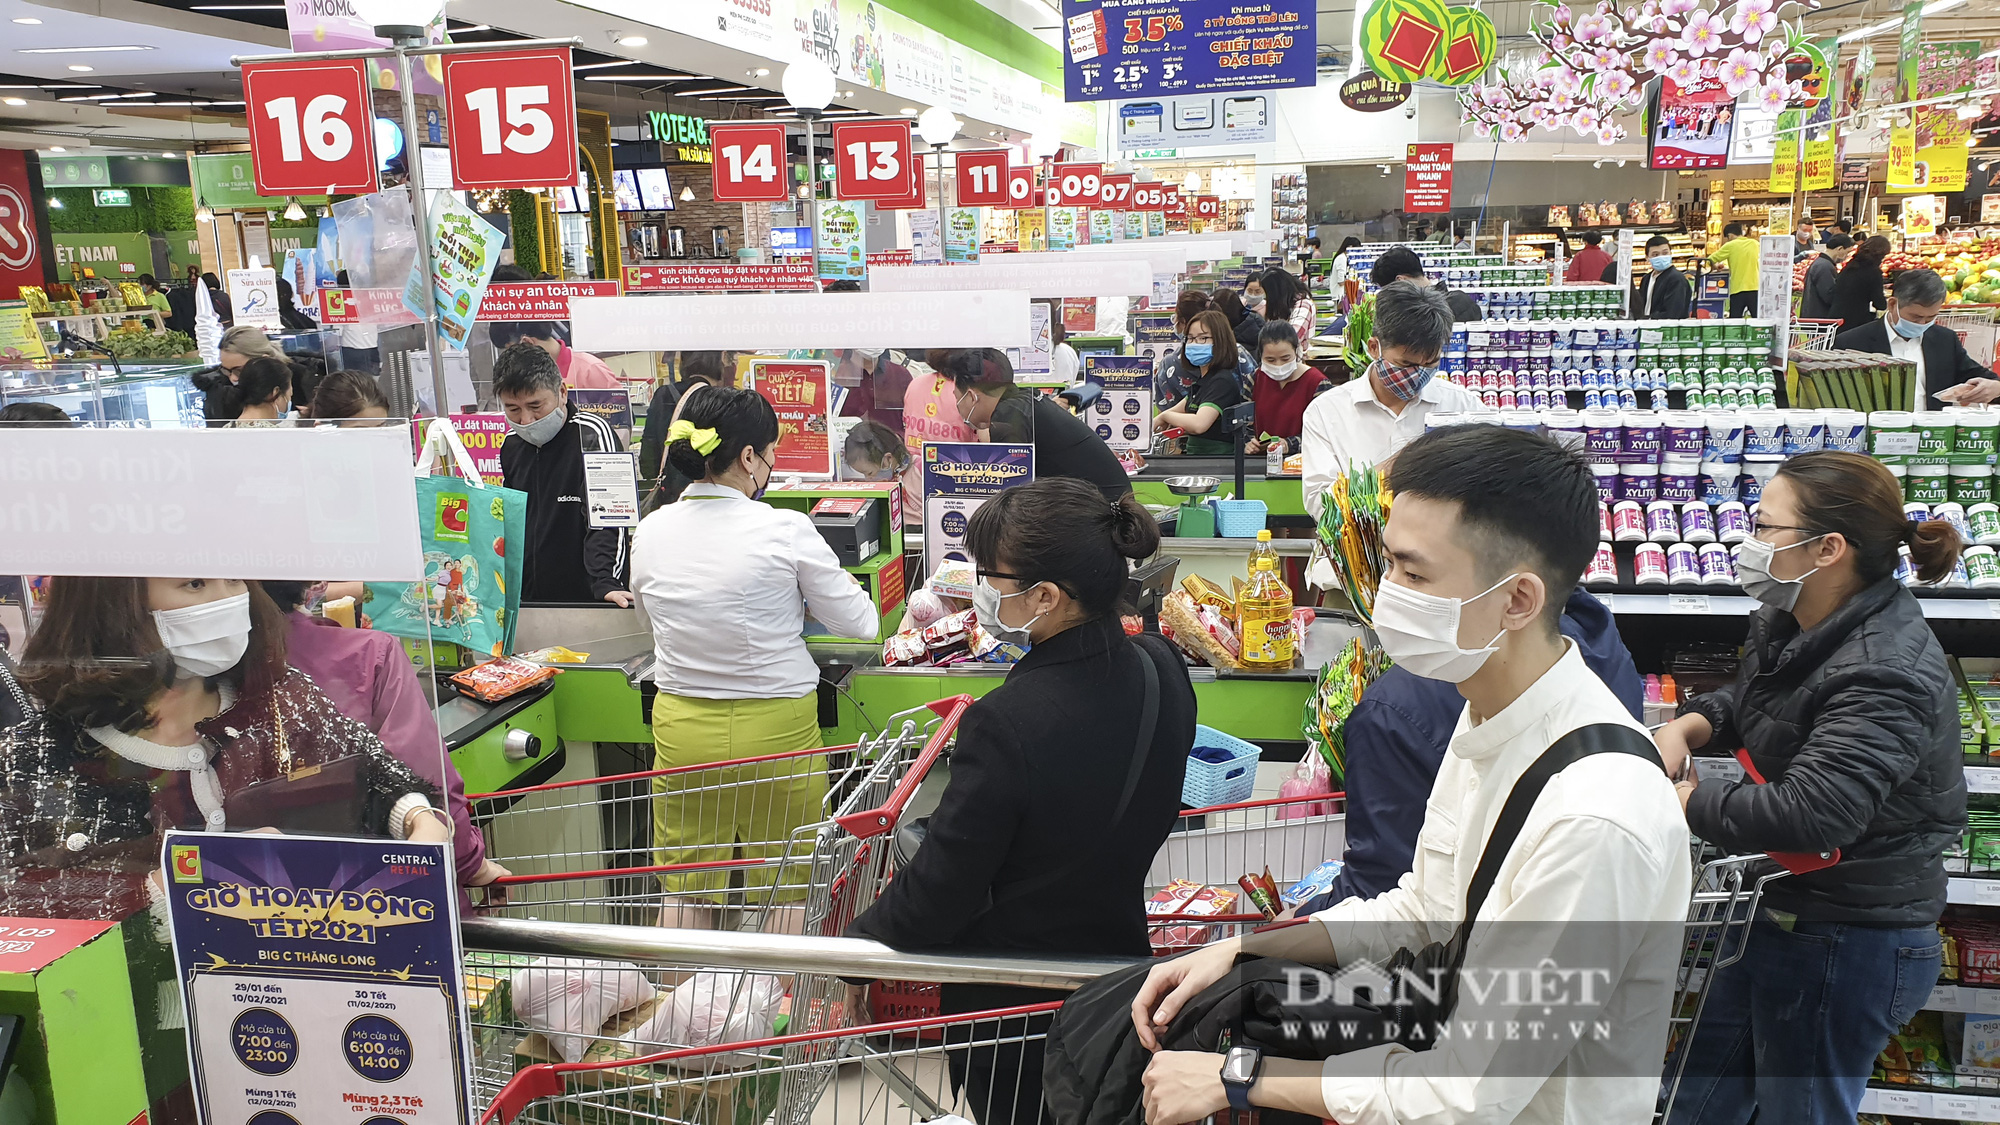 Bất chấp dịch Covid-19, siêu thị vẫn đông nghịt người mua sắm Tết  - Ảnh 12.